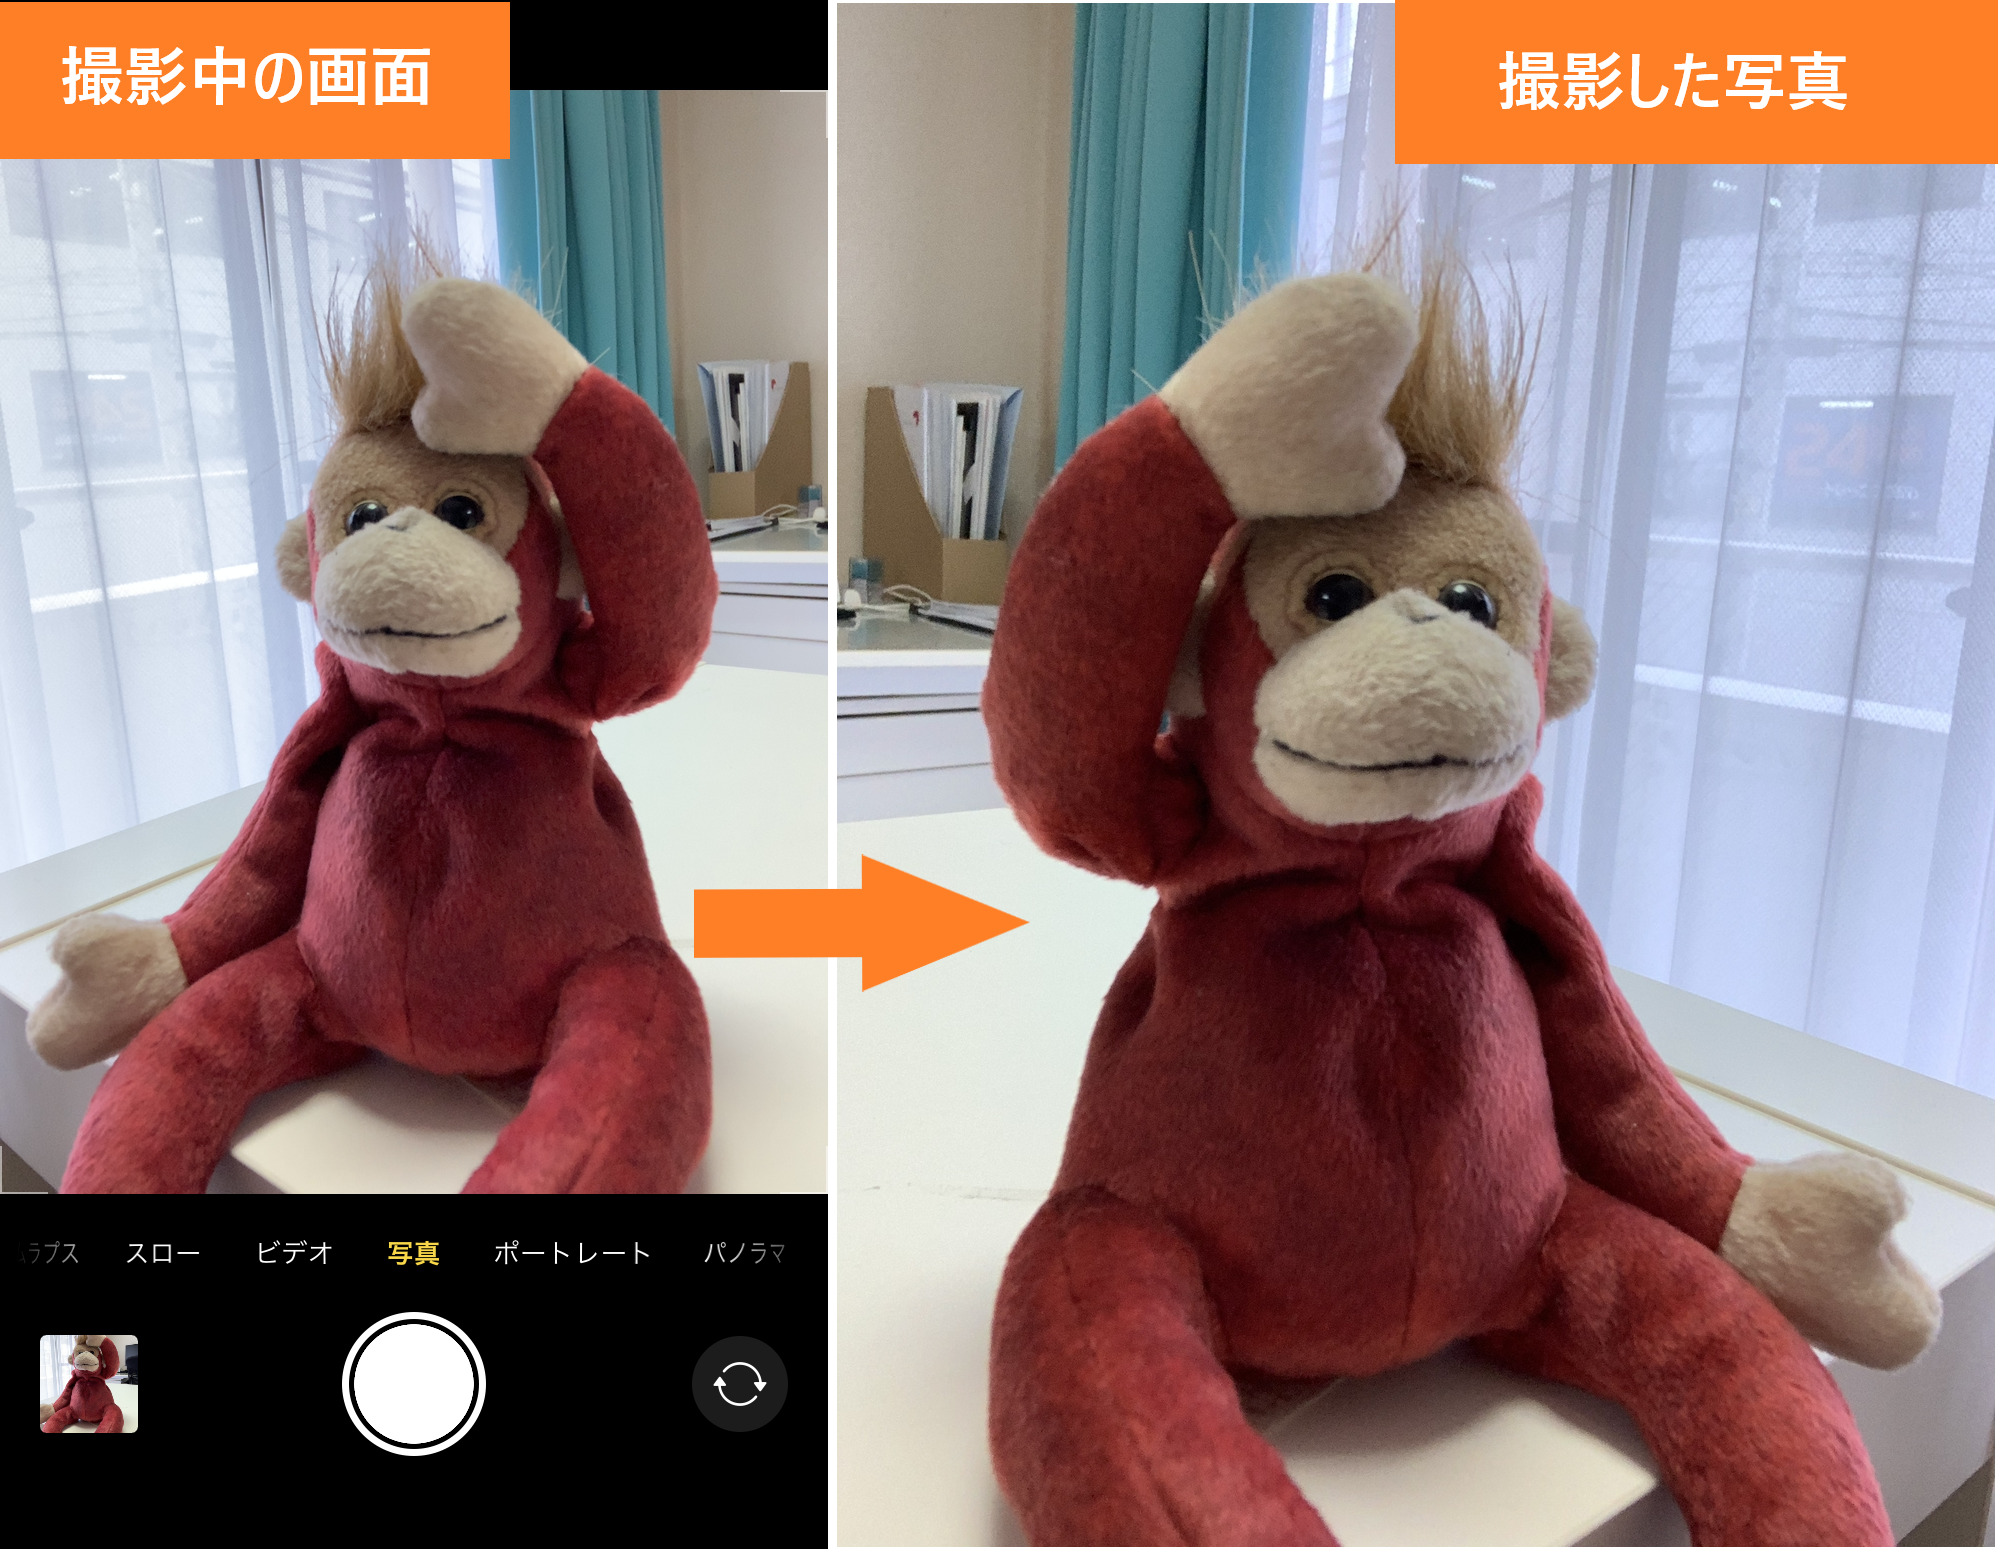 フロントカメラを反転 イメージ通りのセルフィ が撮れるテクニック Iphone Tips Ios 14 Engadget 日本版